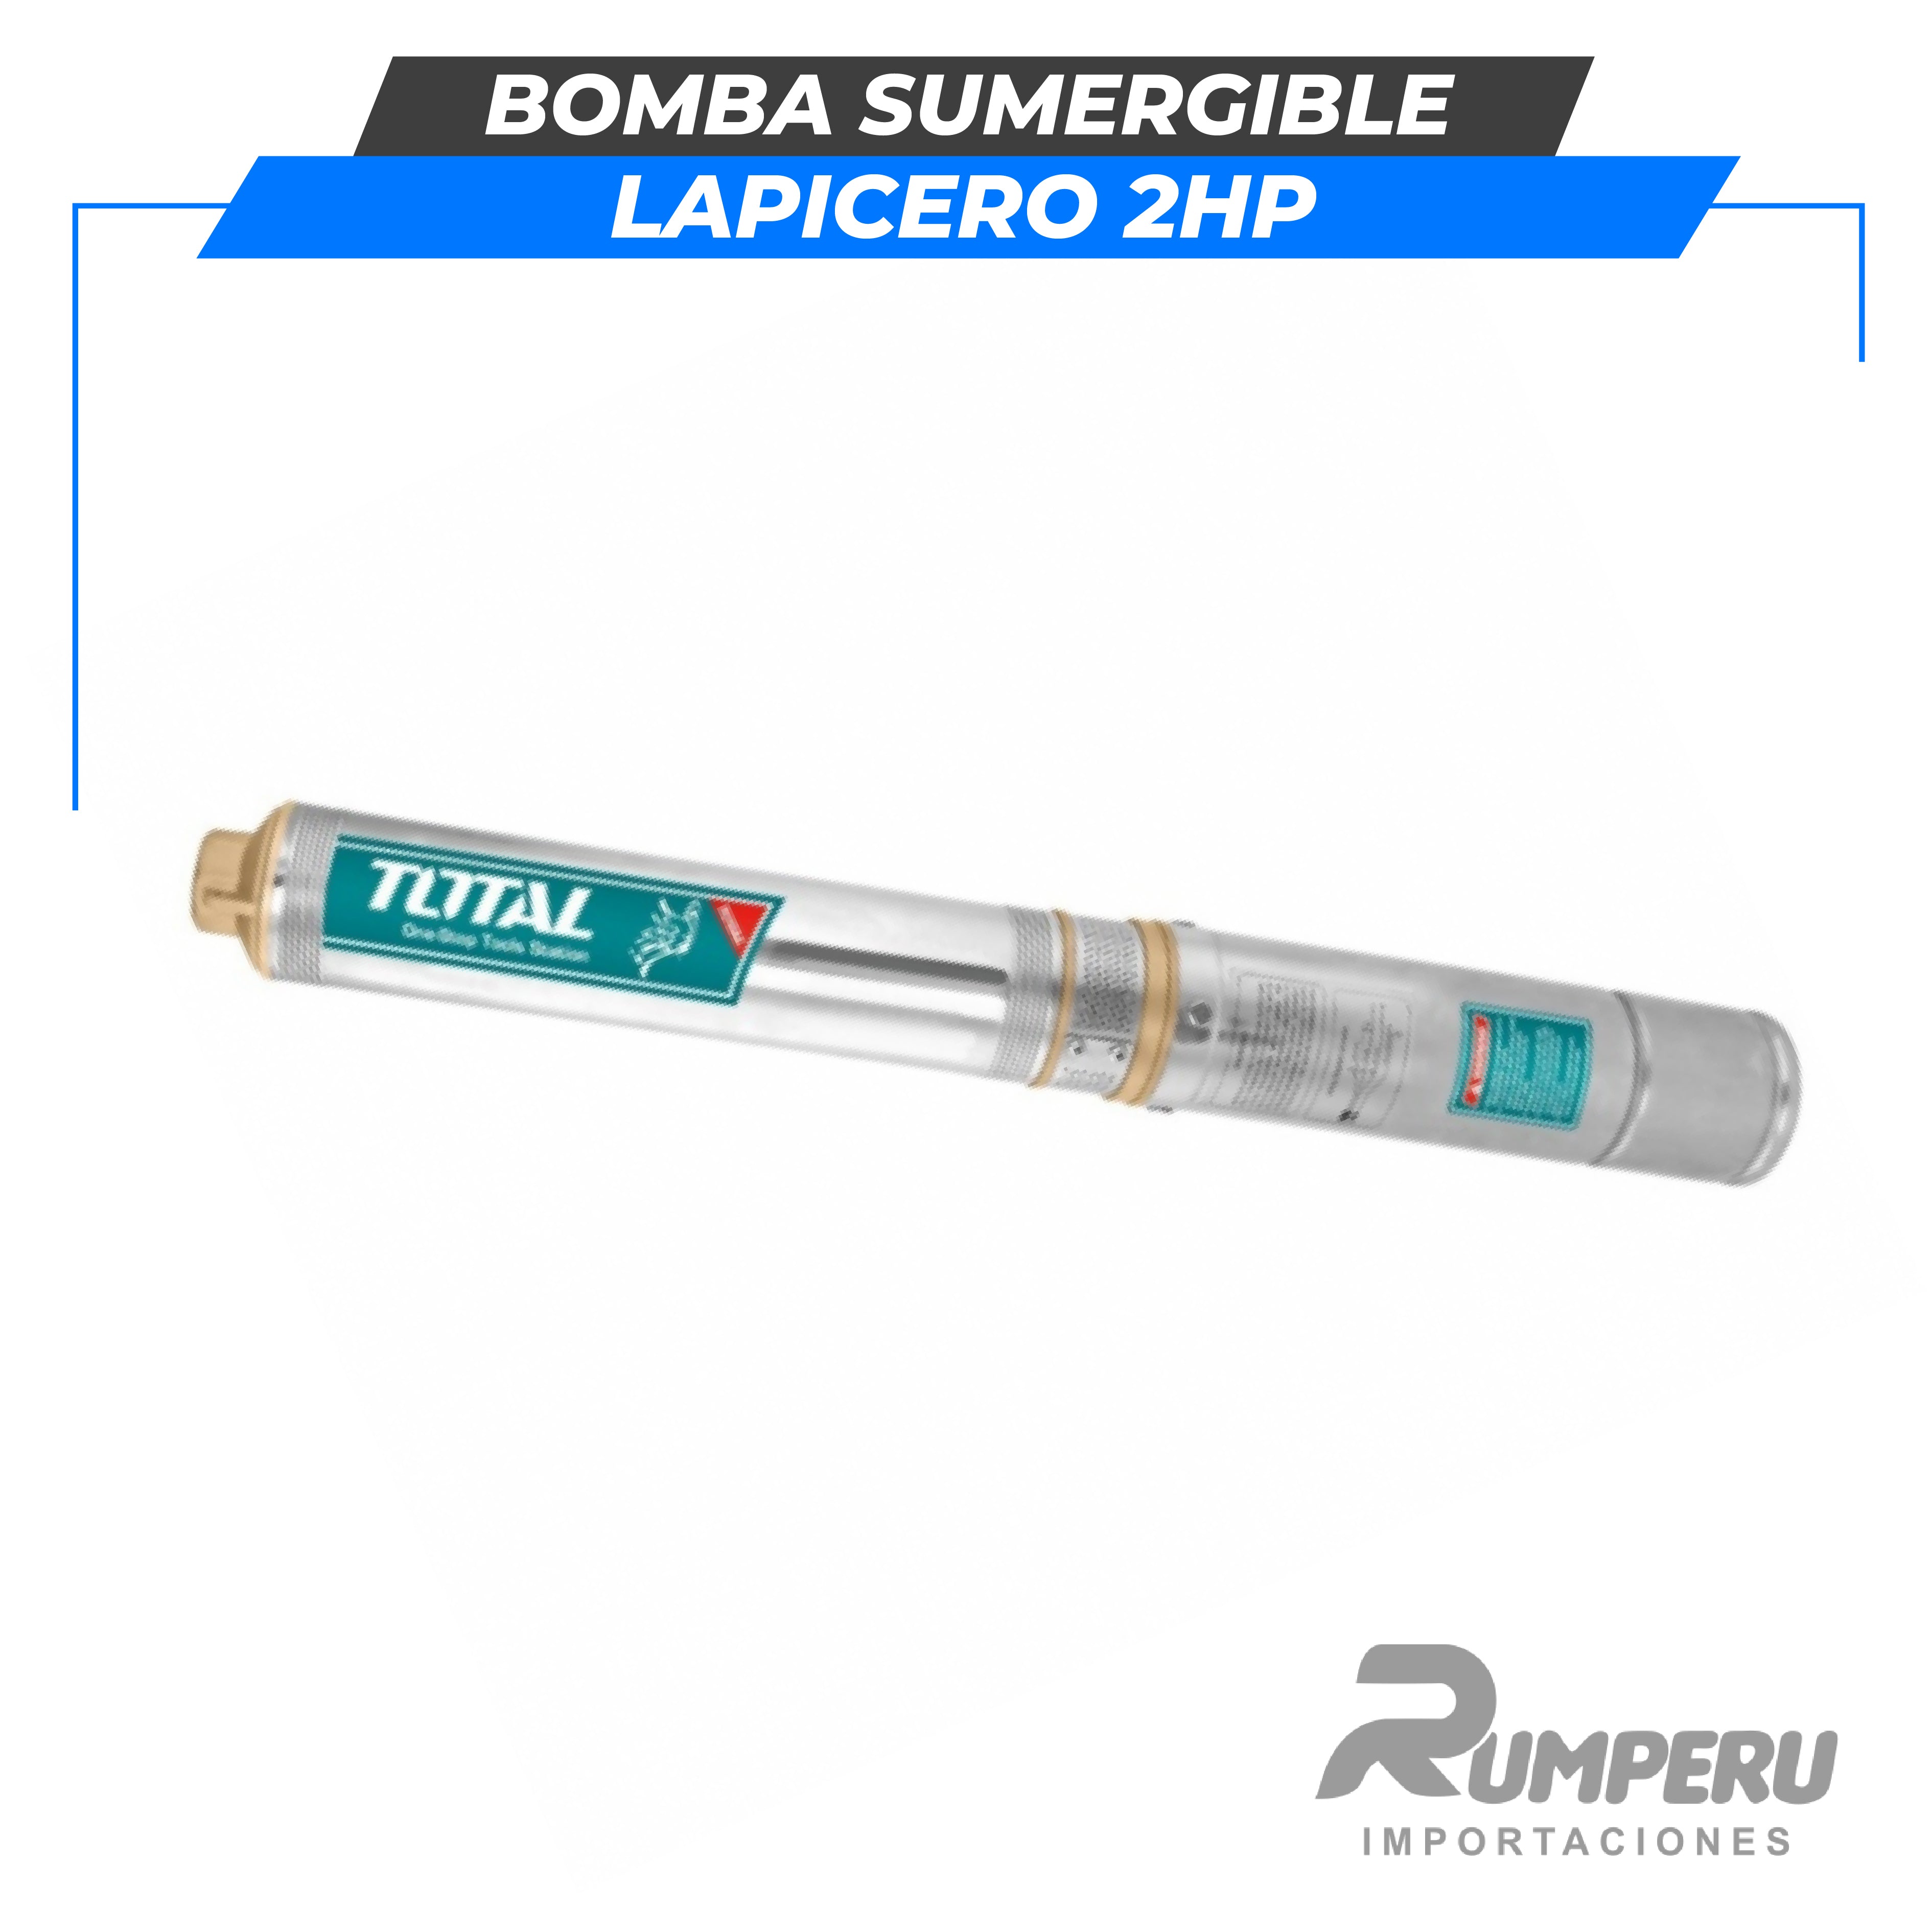 Bomba sumergible lapicero 2HP